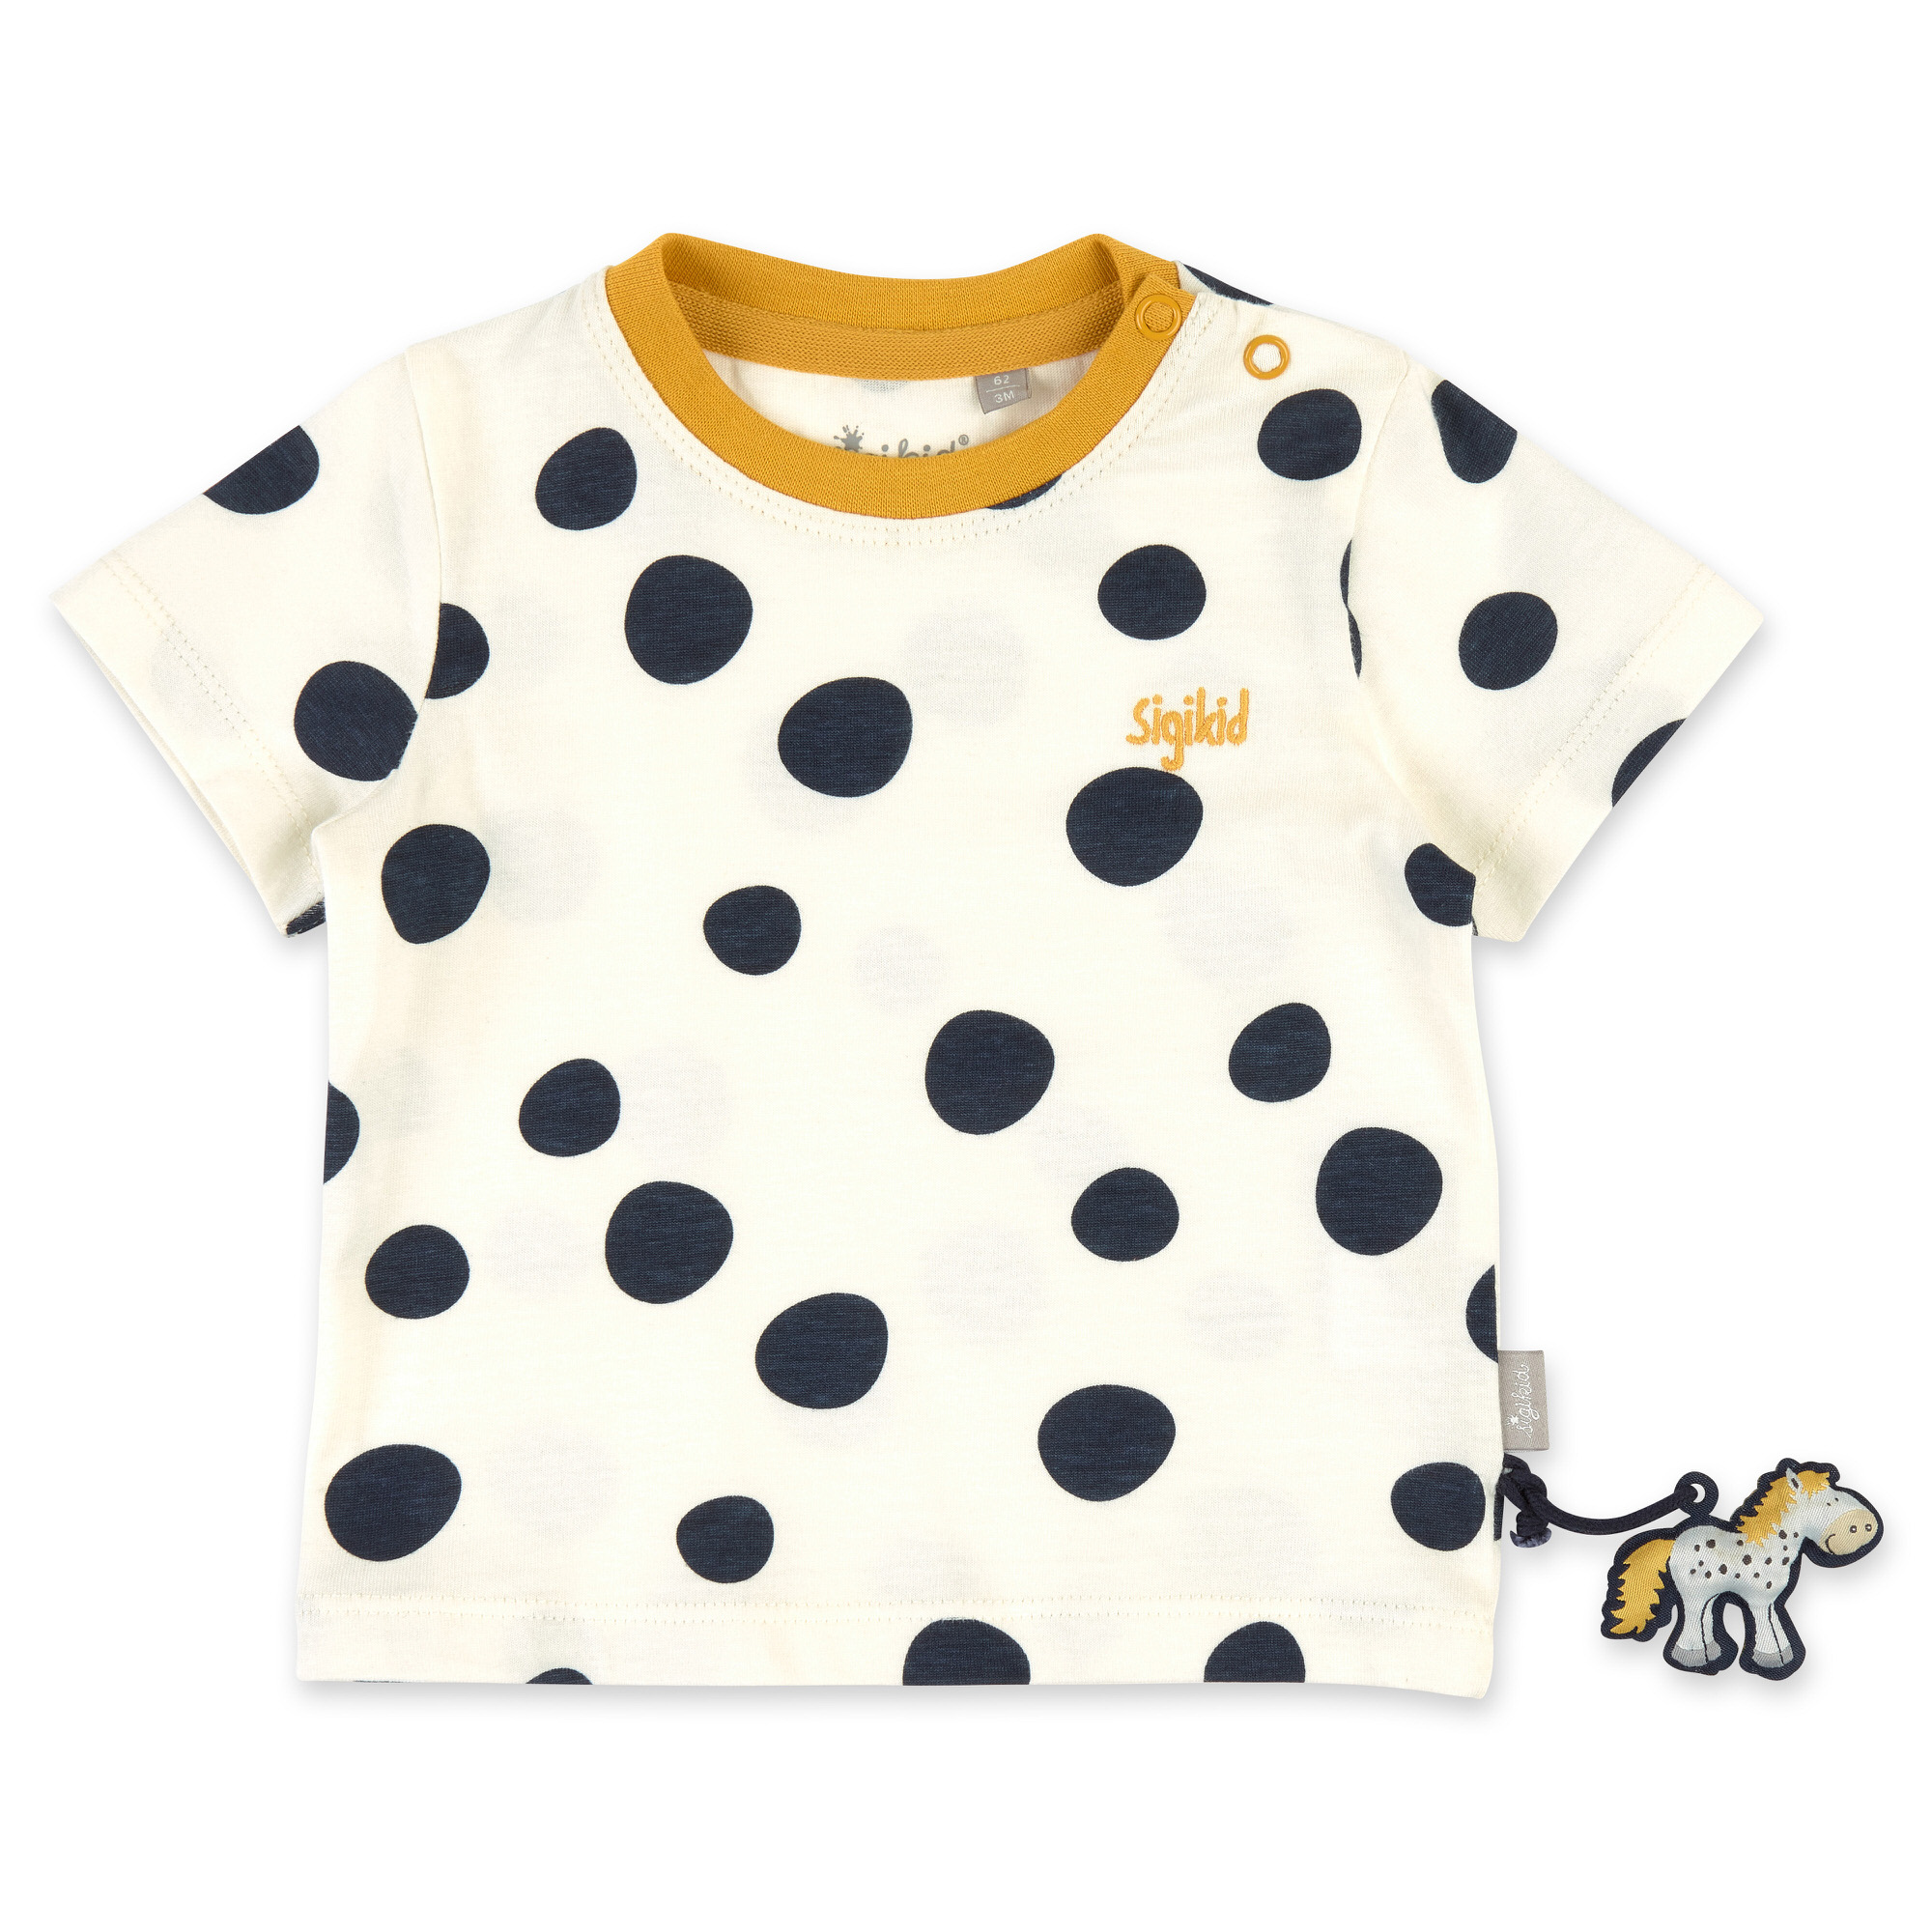 Cream white baby T-shirt, navy dots